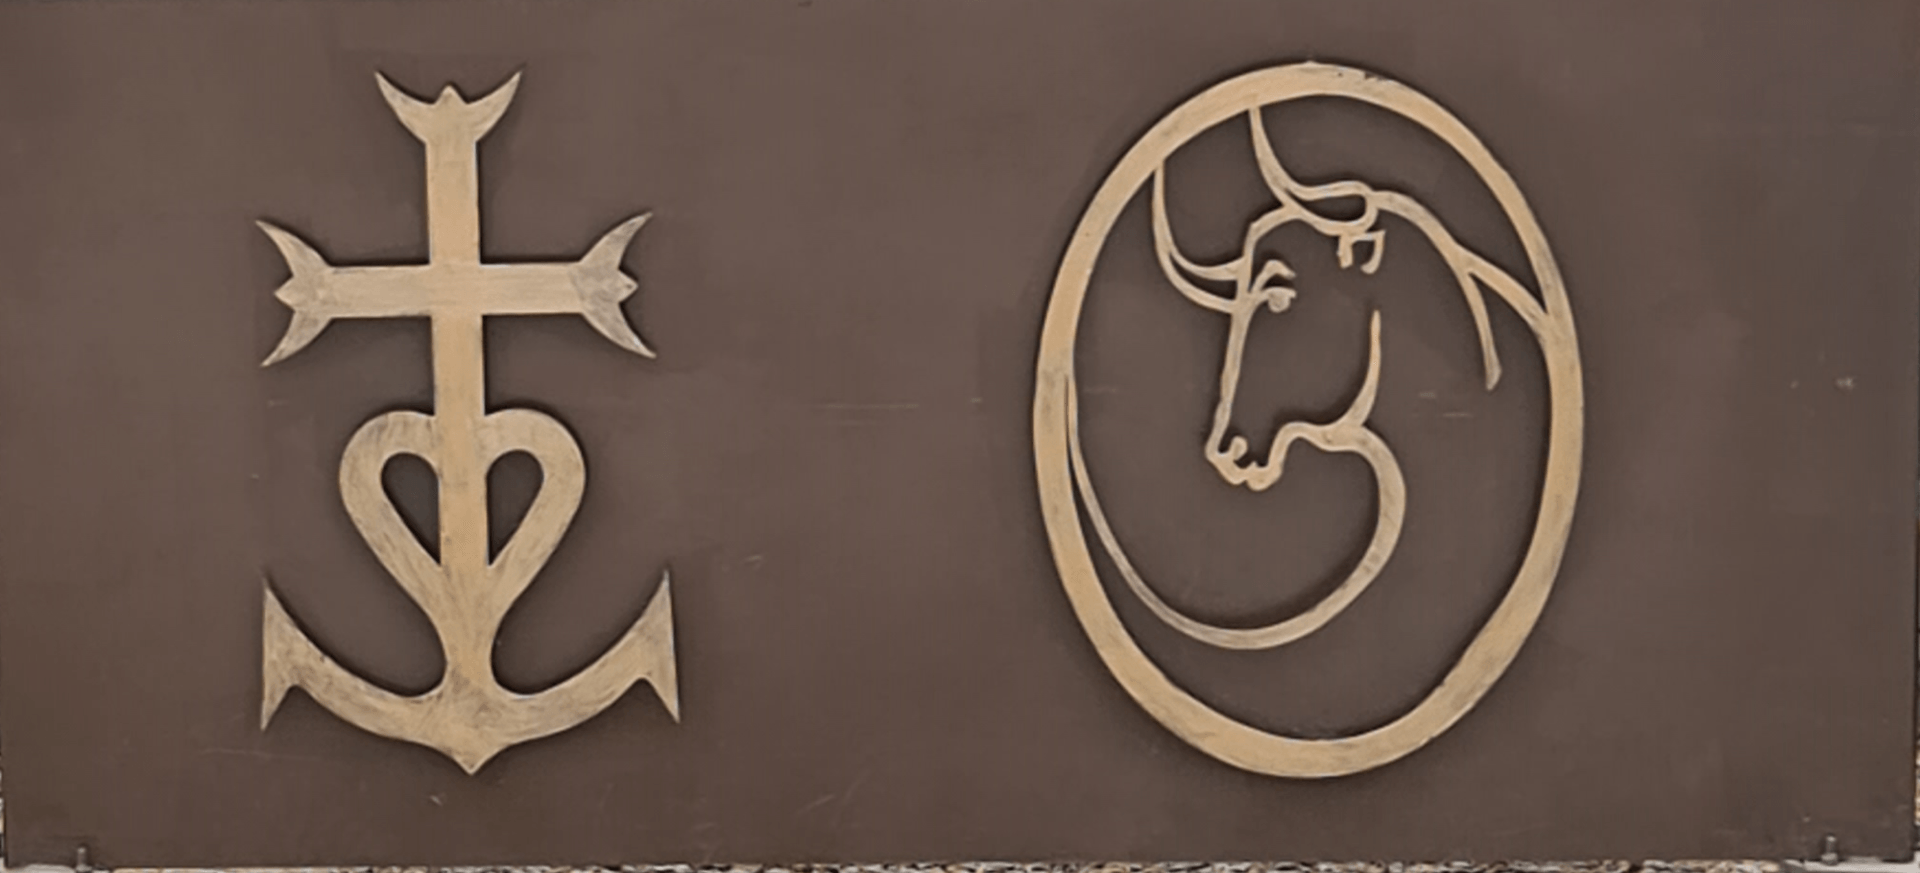 Kreuz der Camargue und ein zechen mit einem Stier in Goldfarbe auf braunem Untergrund